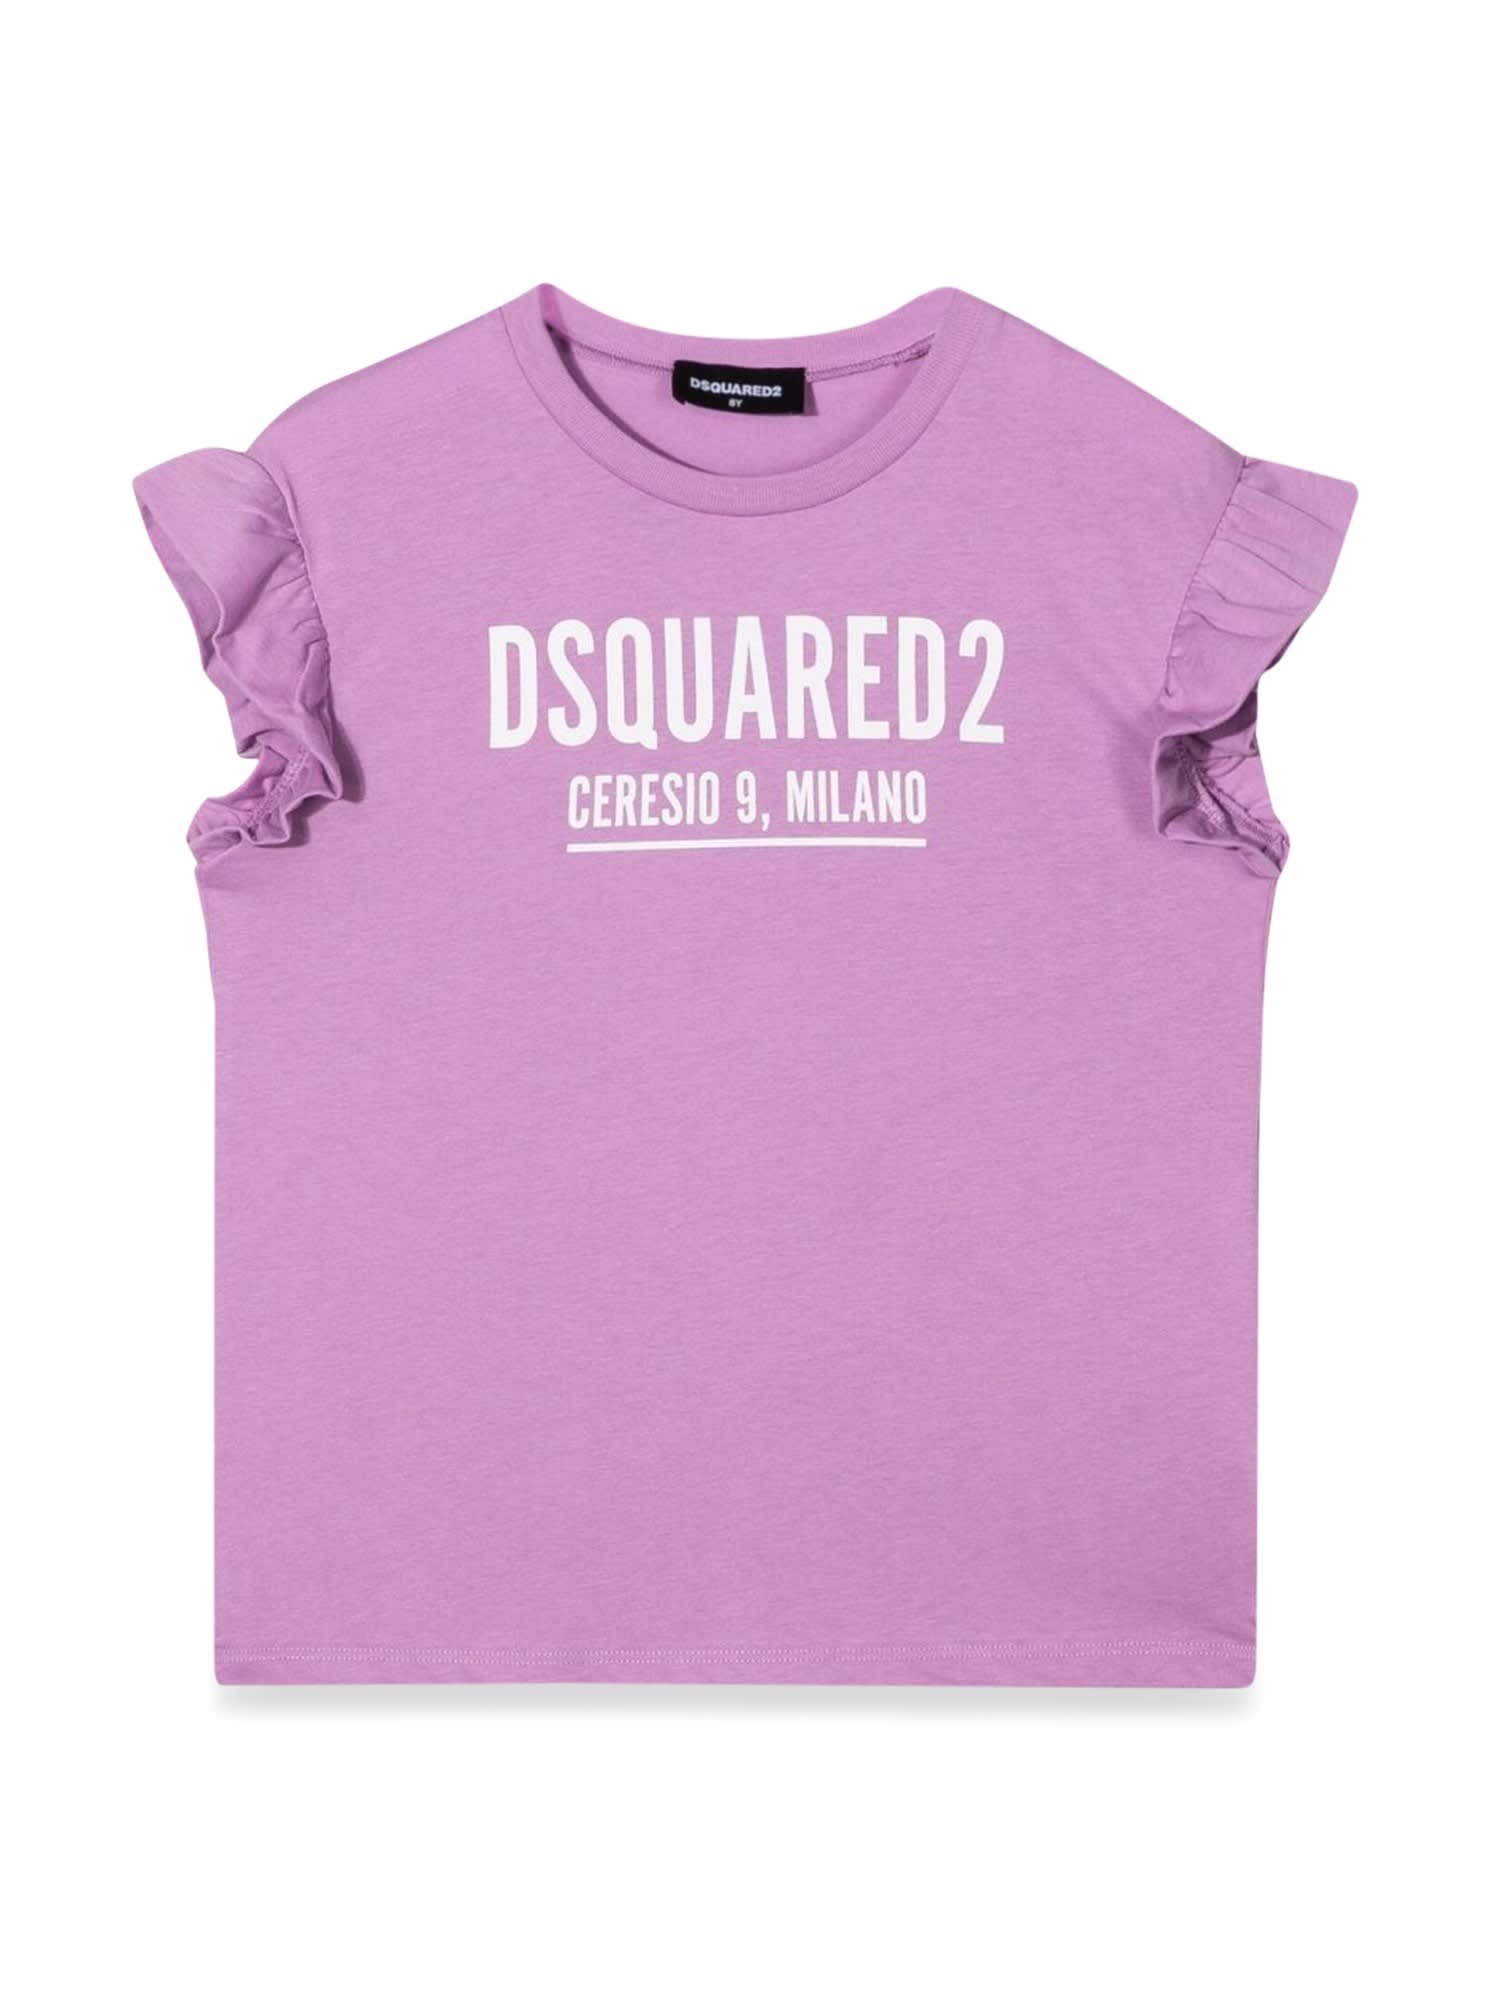 Dsquared2 Kids' Shirt In Arancione